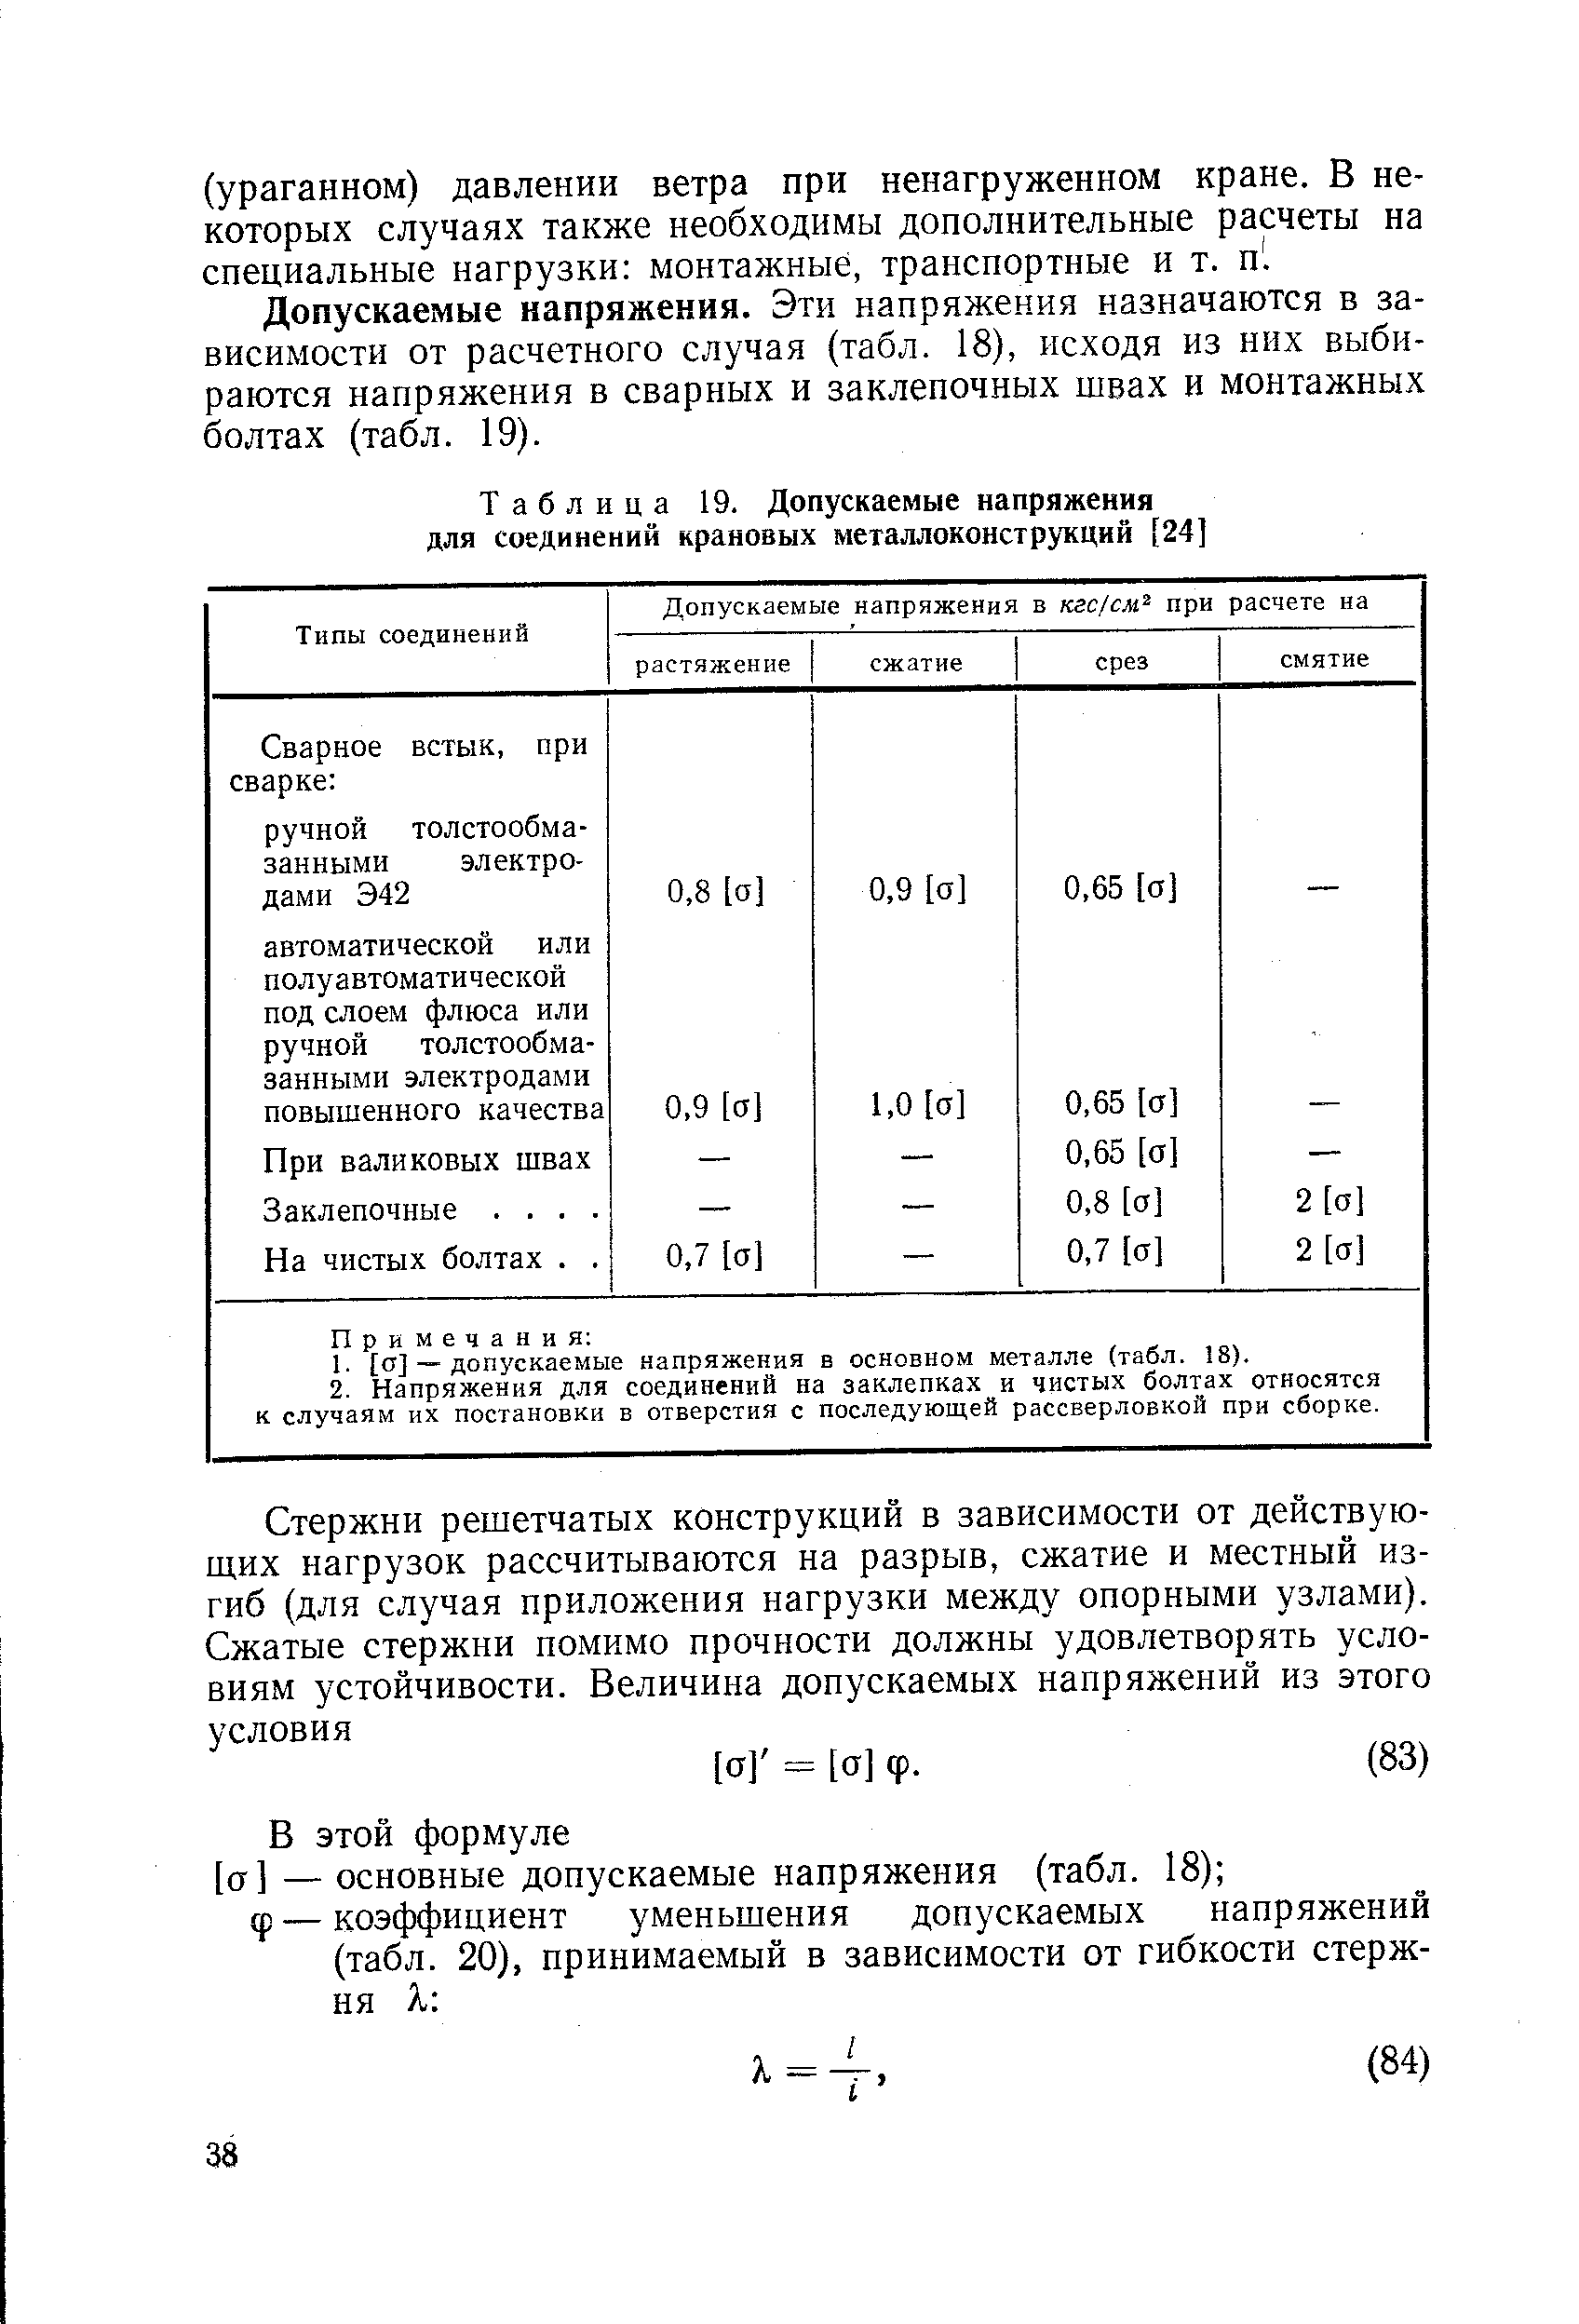 Таблица 19. Допускаемые напряжения для соединений крановых металлоконструкций [24]
